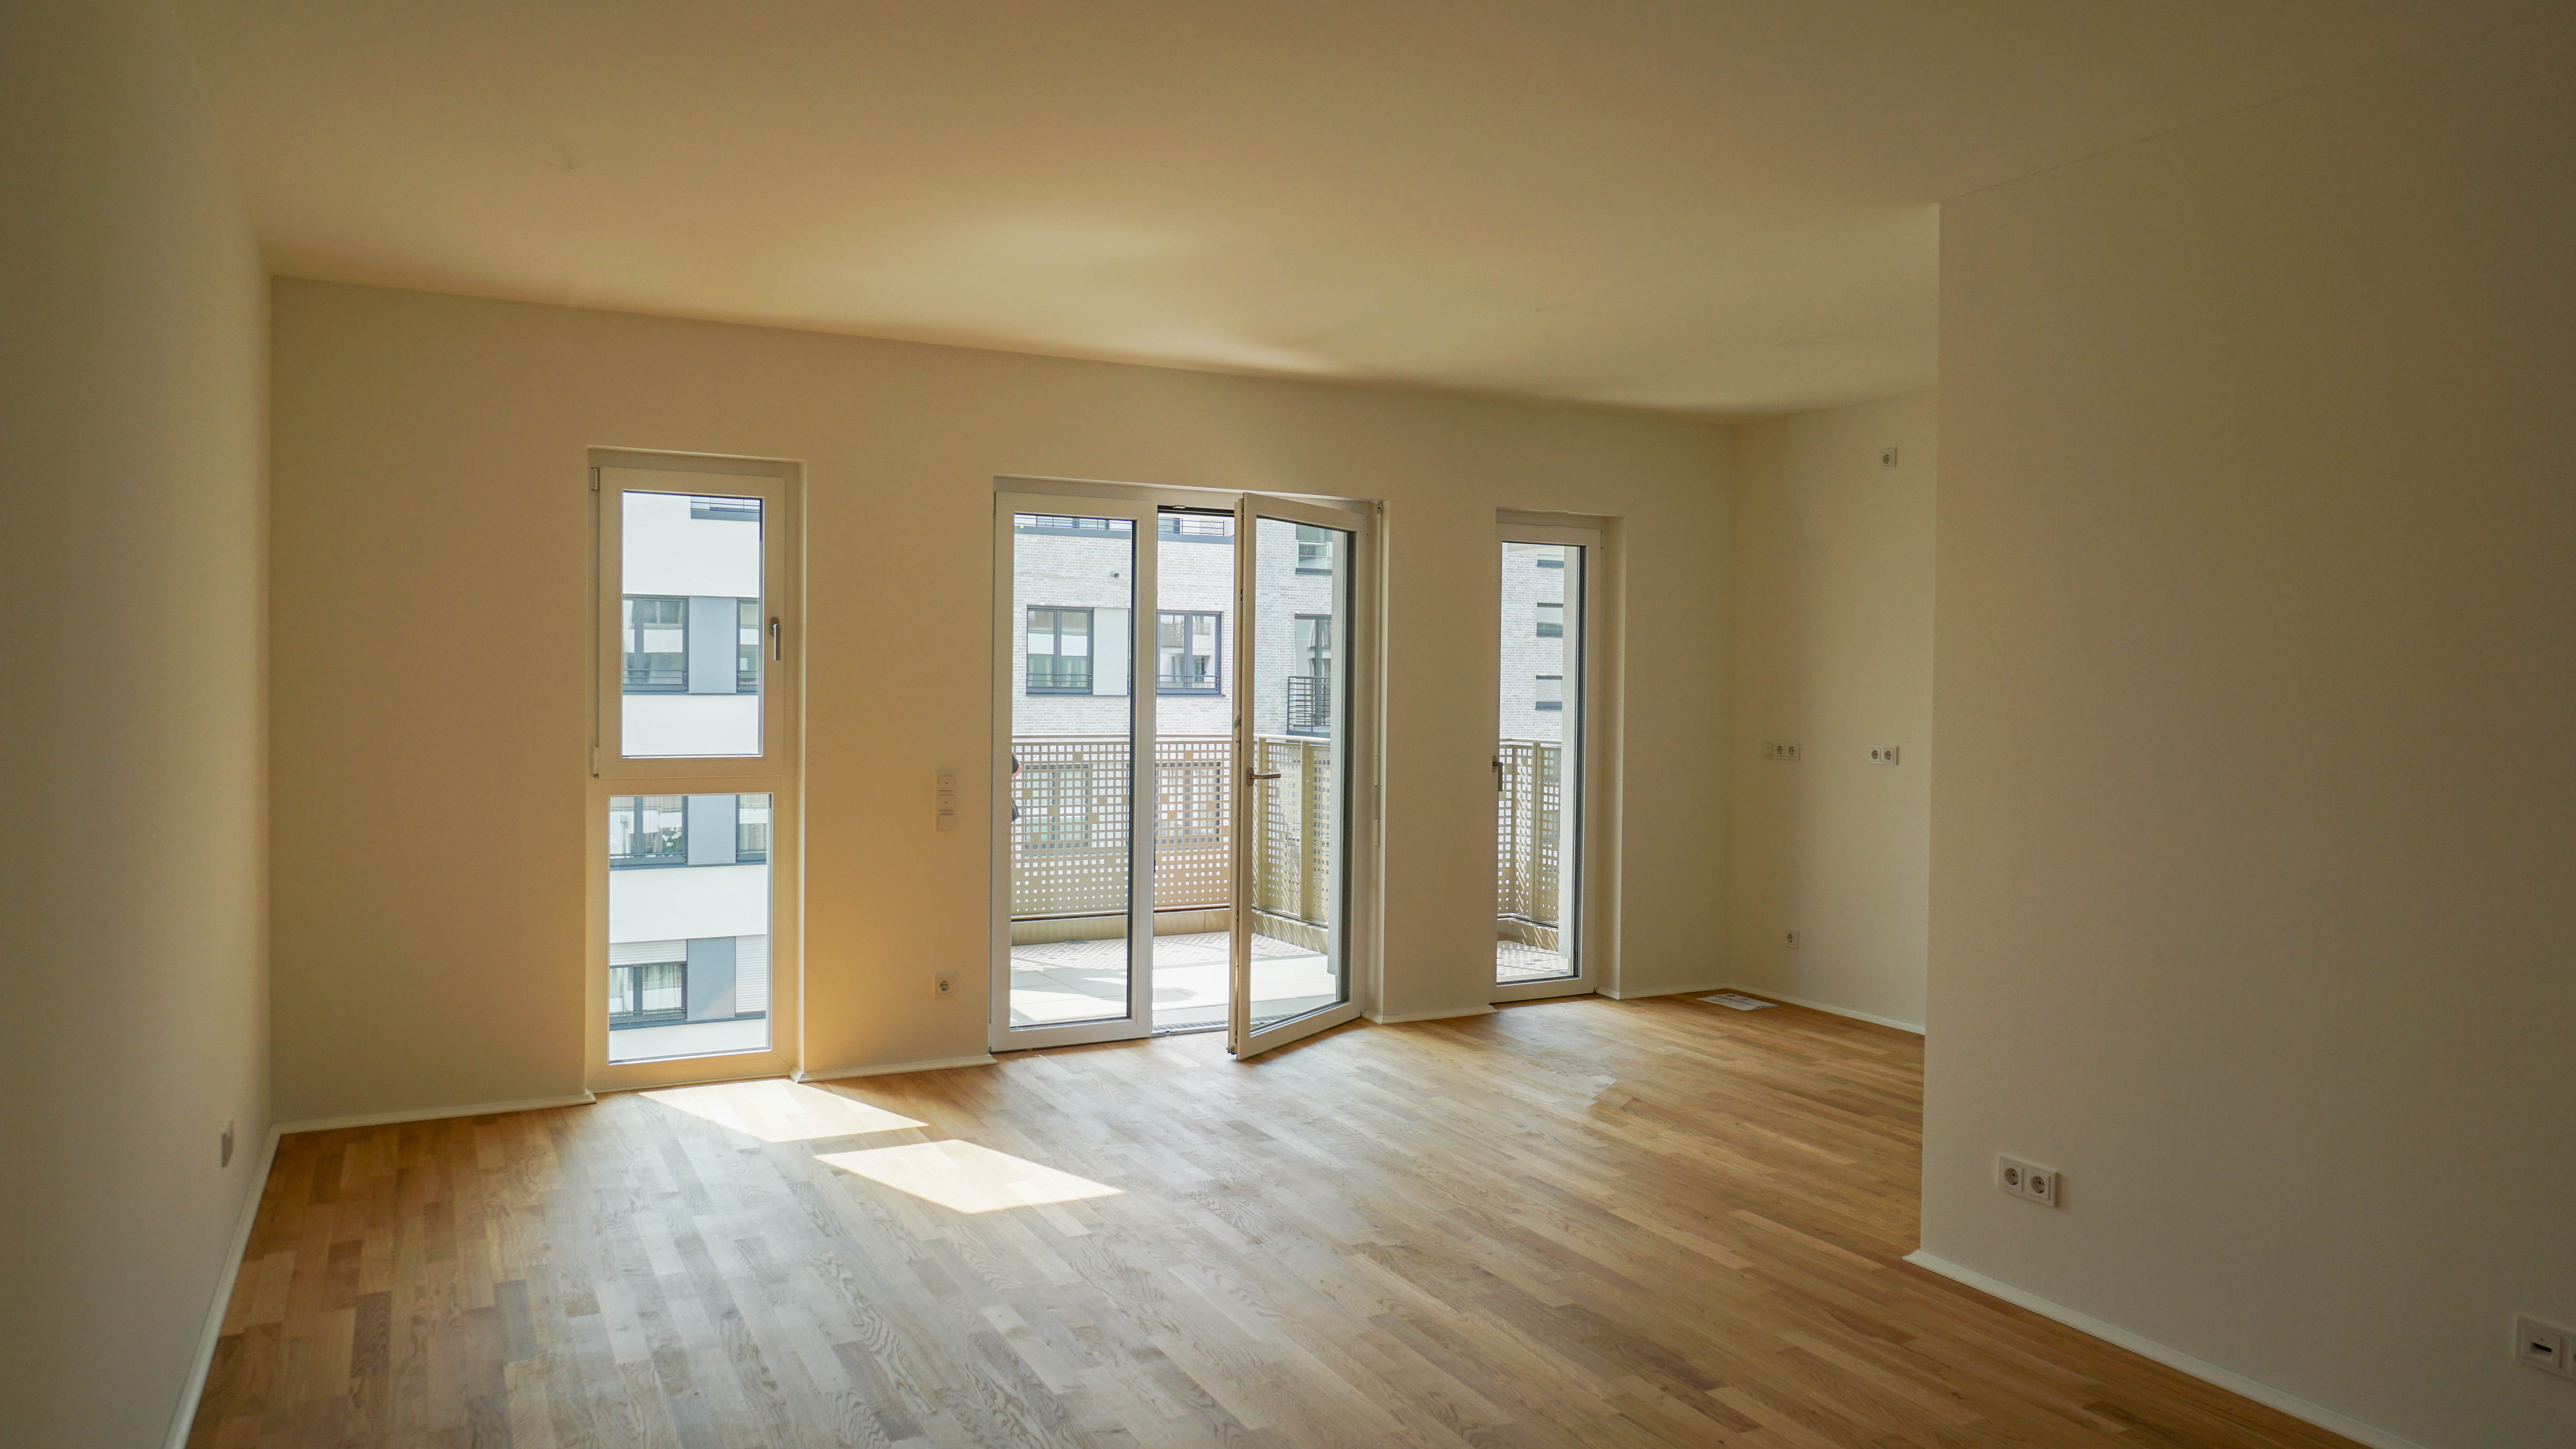 Neubau 2021! Gemütliche 3-Zimmer-Wohnung mit Balkon und Einbauküche